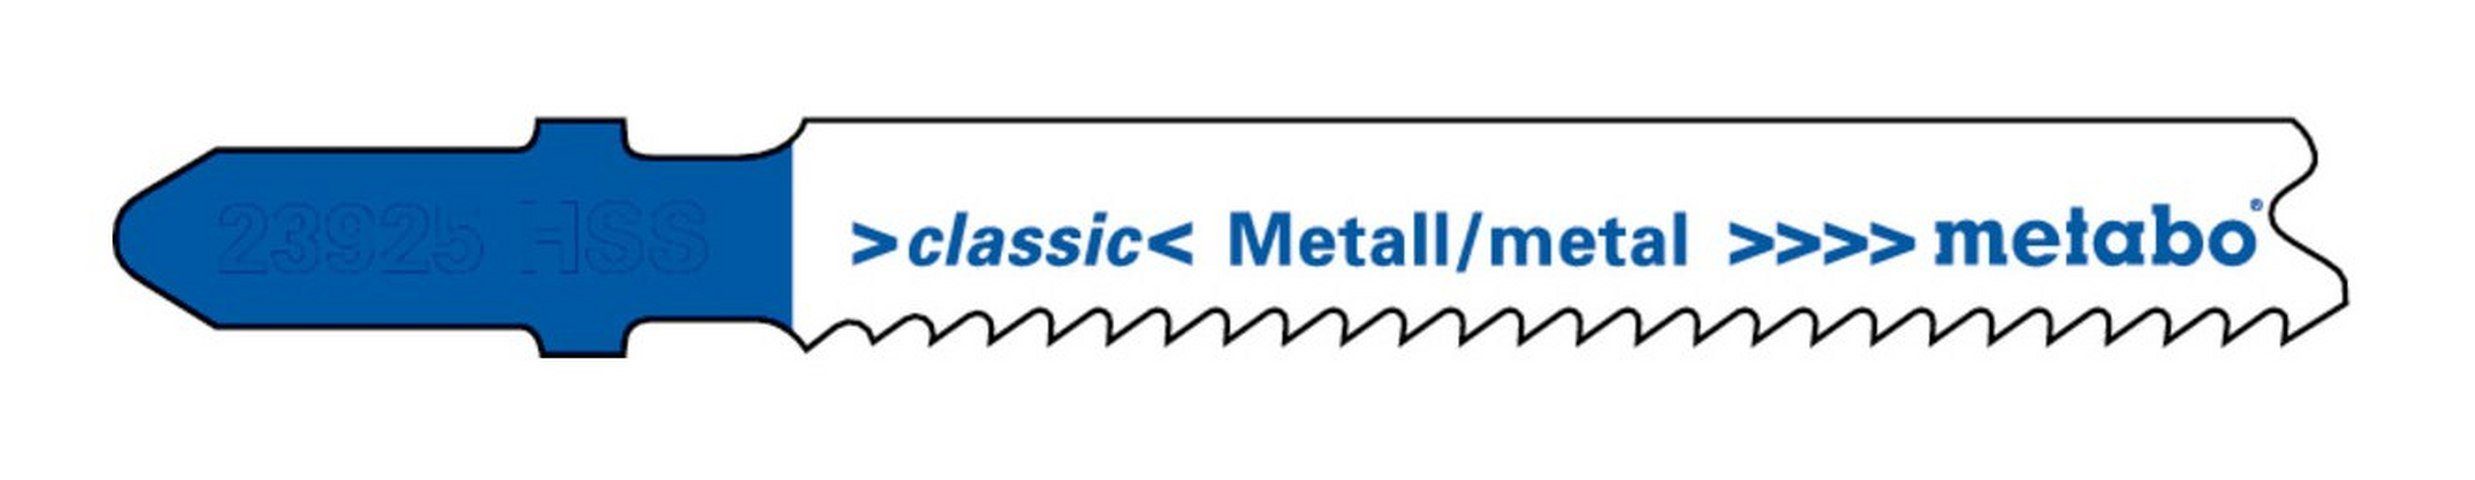 Eintauchspitze HSS Metall metabo classic mm Stück), 1,9-2,3 / progressiv Stichsägeblatt Serie 66 (5 mit